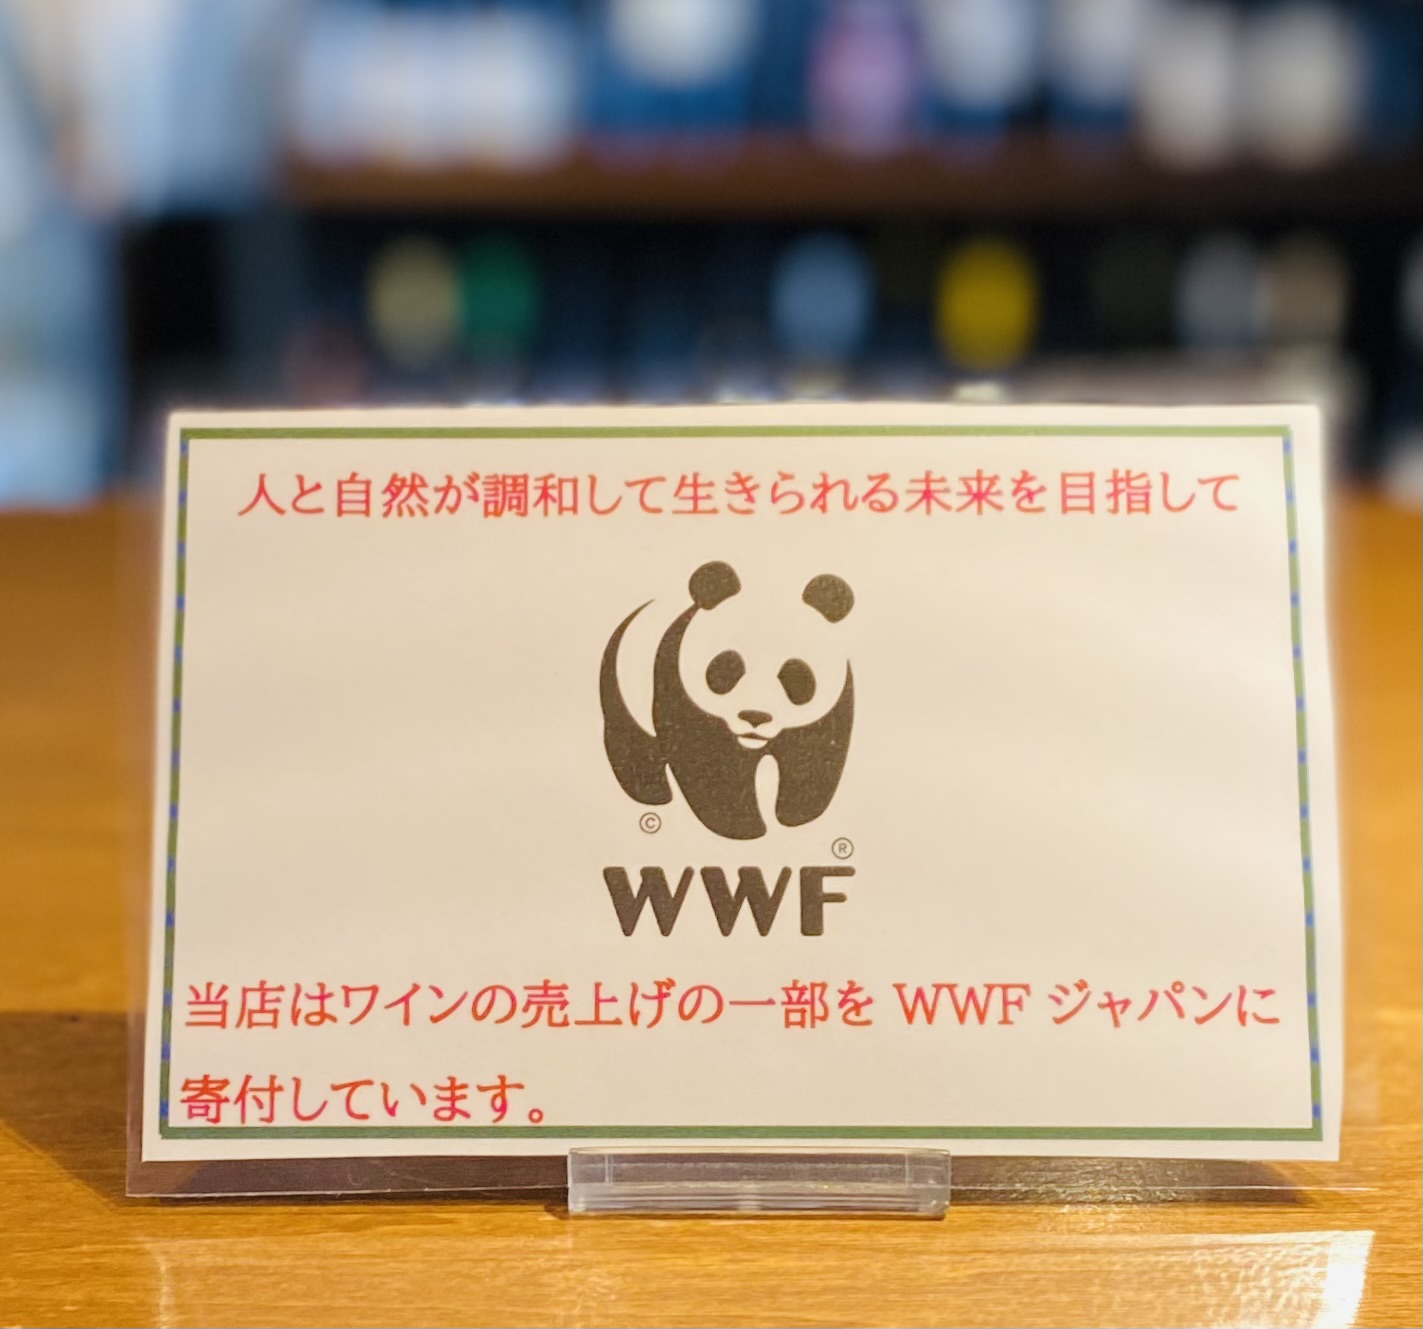 ワイン販売の売り上げの一部をWWFジャパンに寄付します。